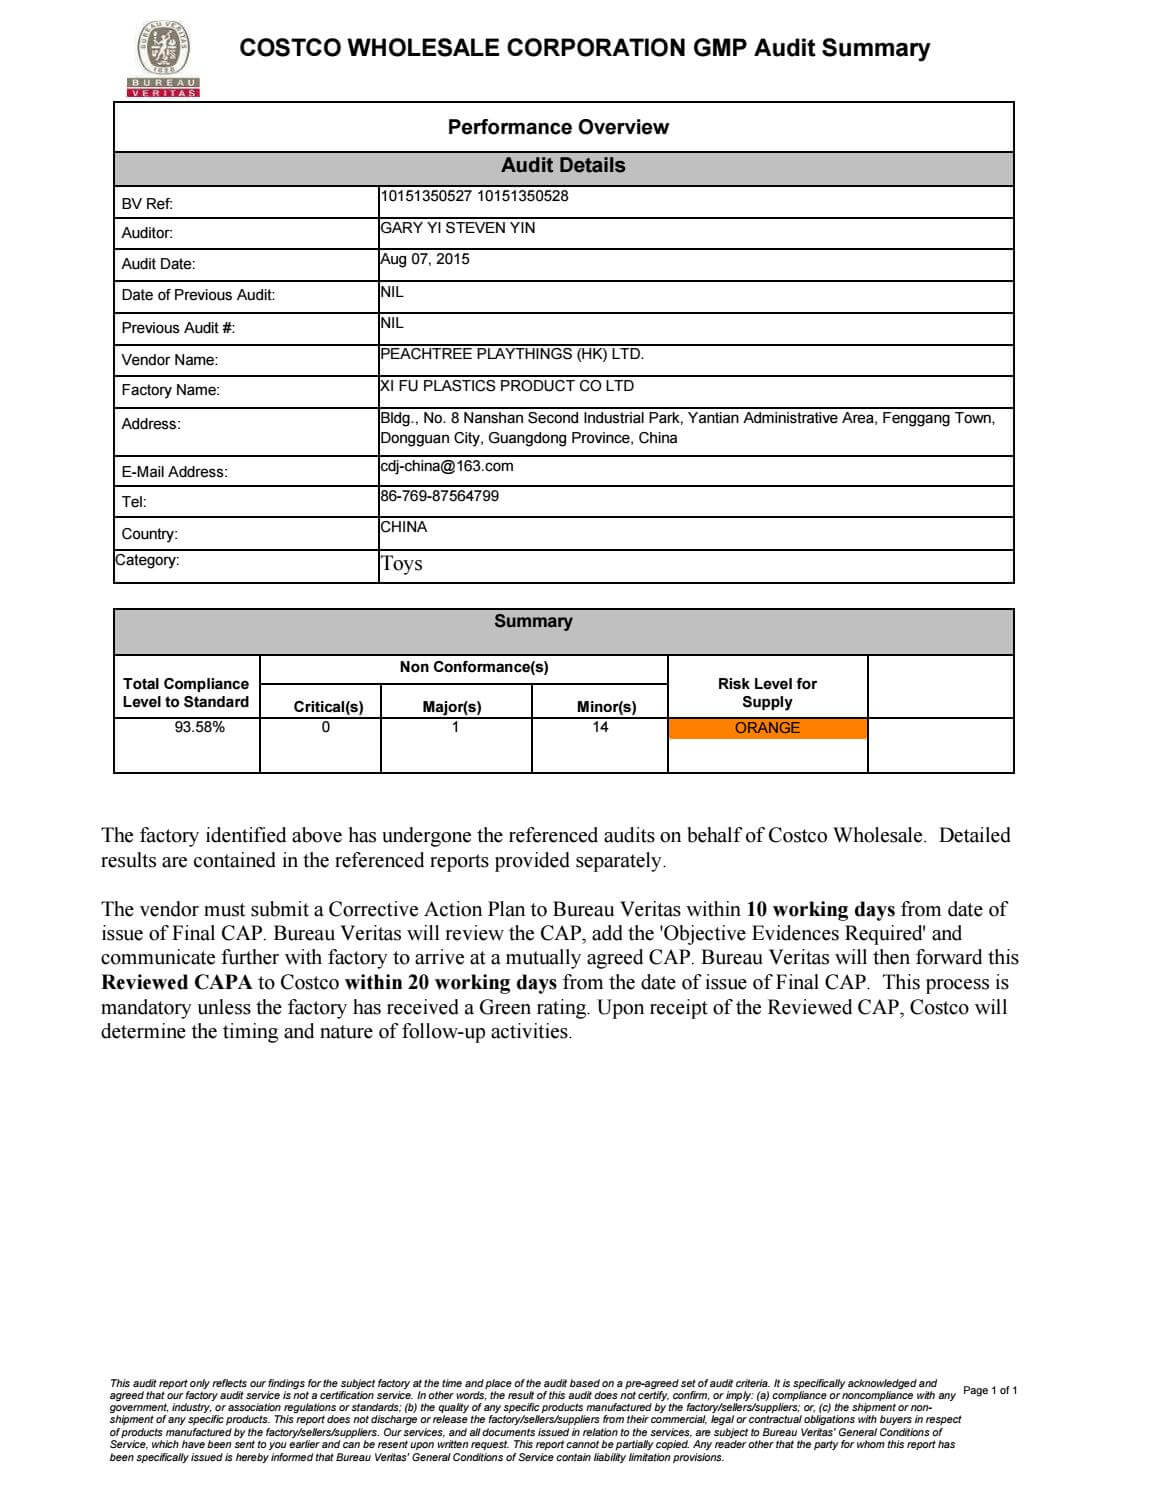 10151350527 & 10151350528 Costco Gmp Reports Xifu (Aug 07 In Gmp Audit Report Template